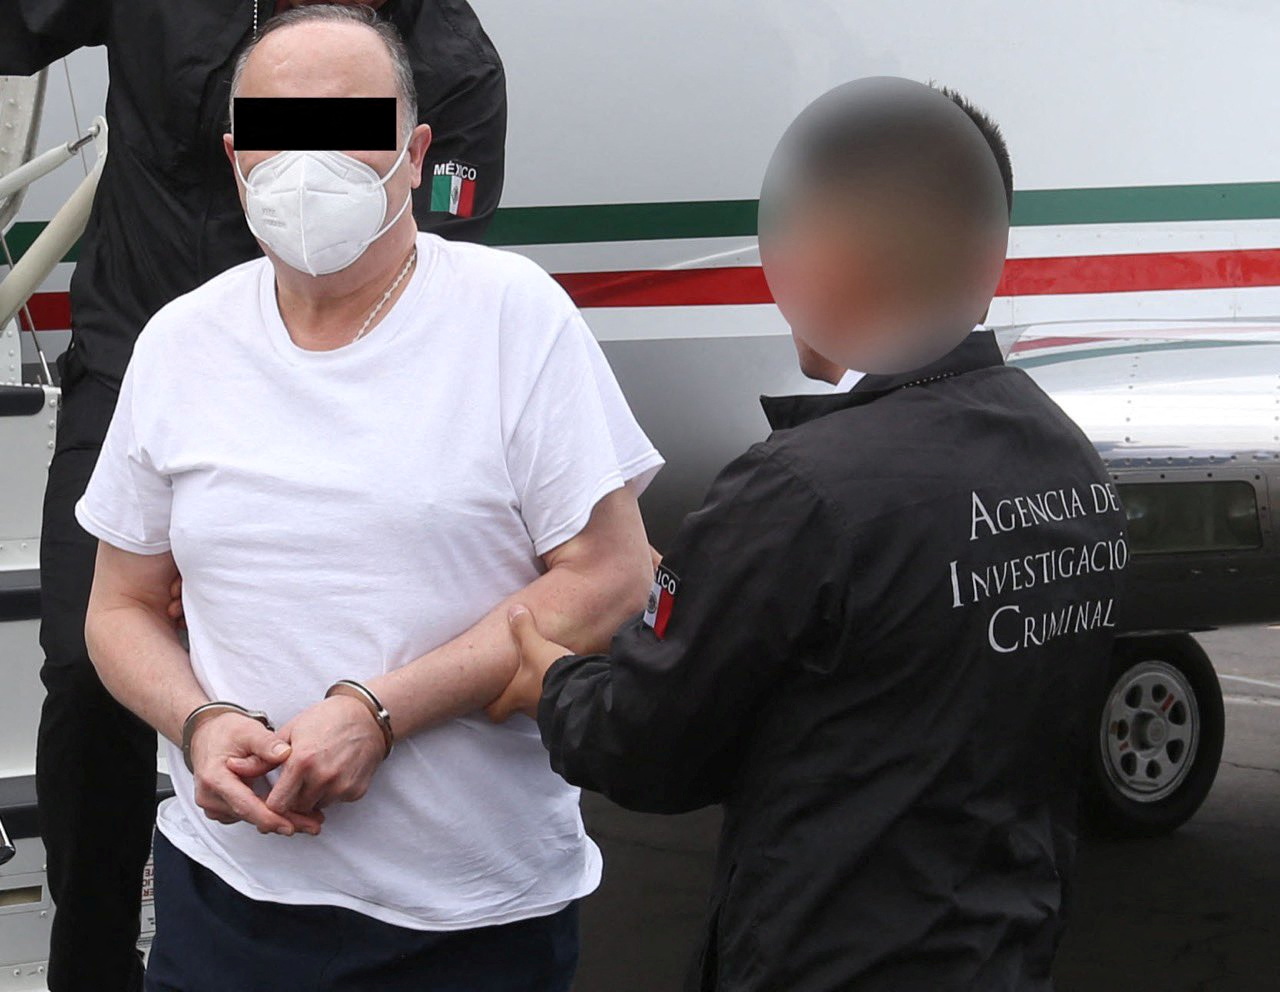 César Duarte llegó a México el pasado jueves 2 de junio, para enfrentar los cargos de peculado y asociación delictuosa que le imputa la Fiscalía de Chihuahua. (Foto: FGR/ vía REUTERS)